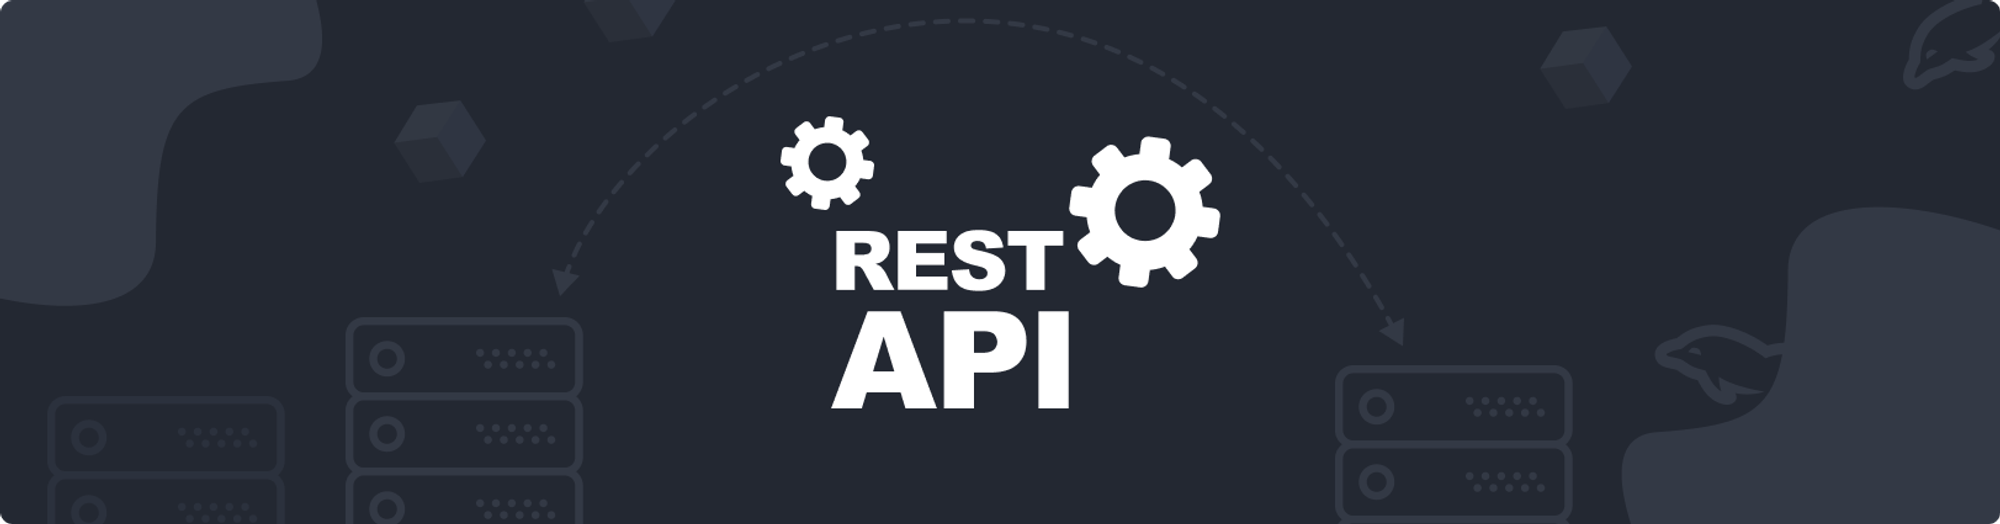 Rest API: Panduan Praktis Membuat API dengan Aturan yang Benar